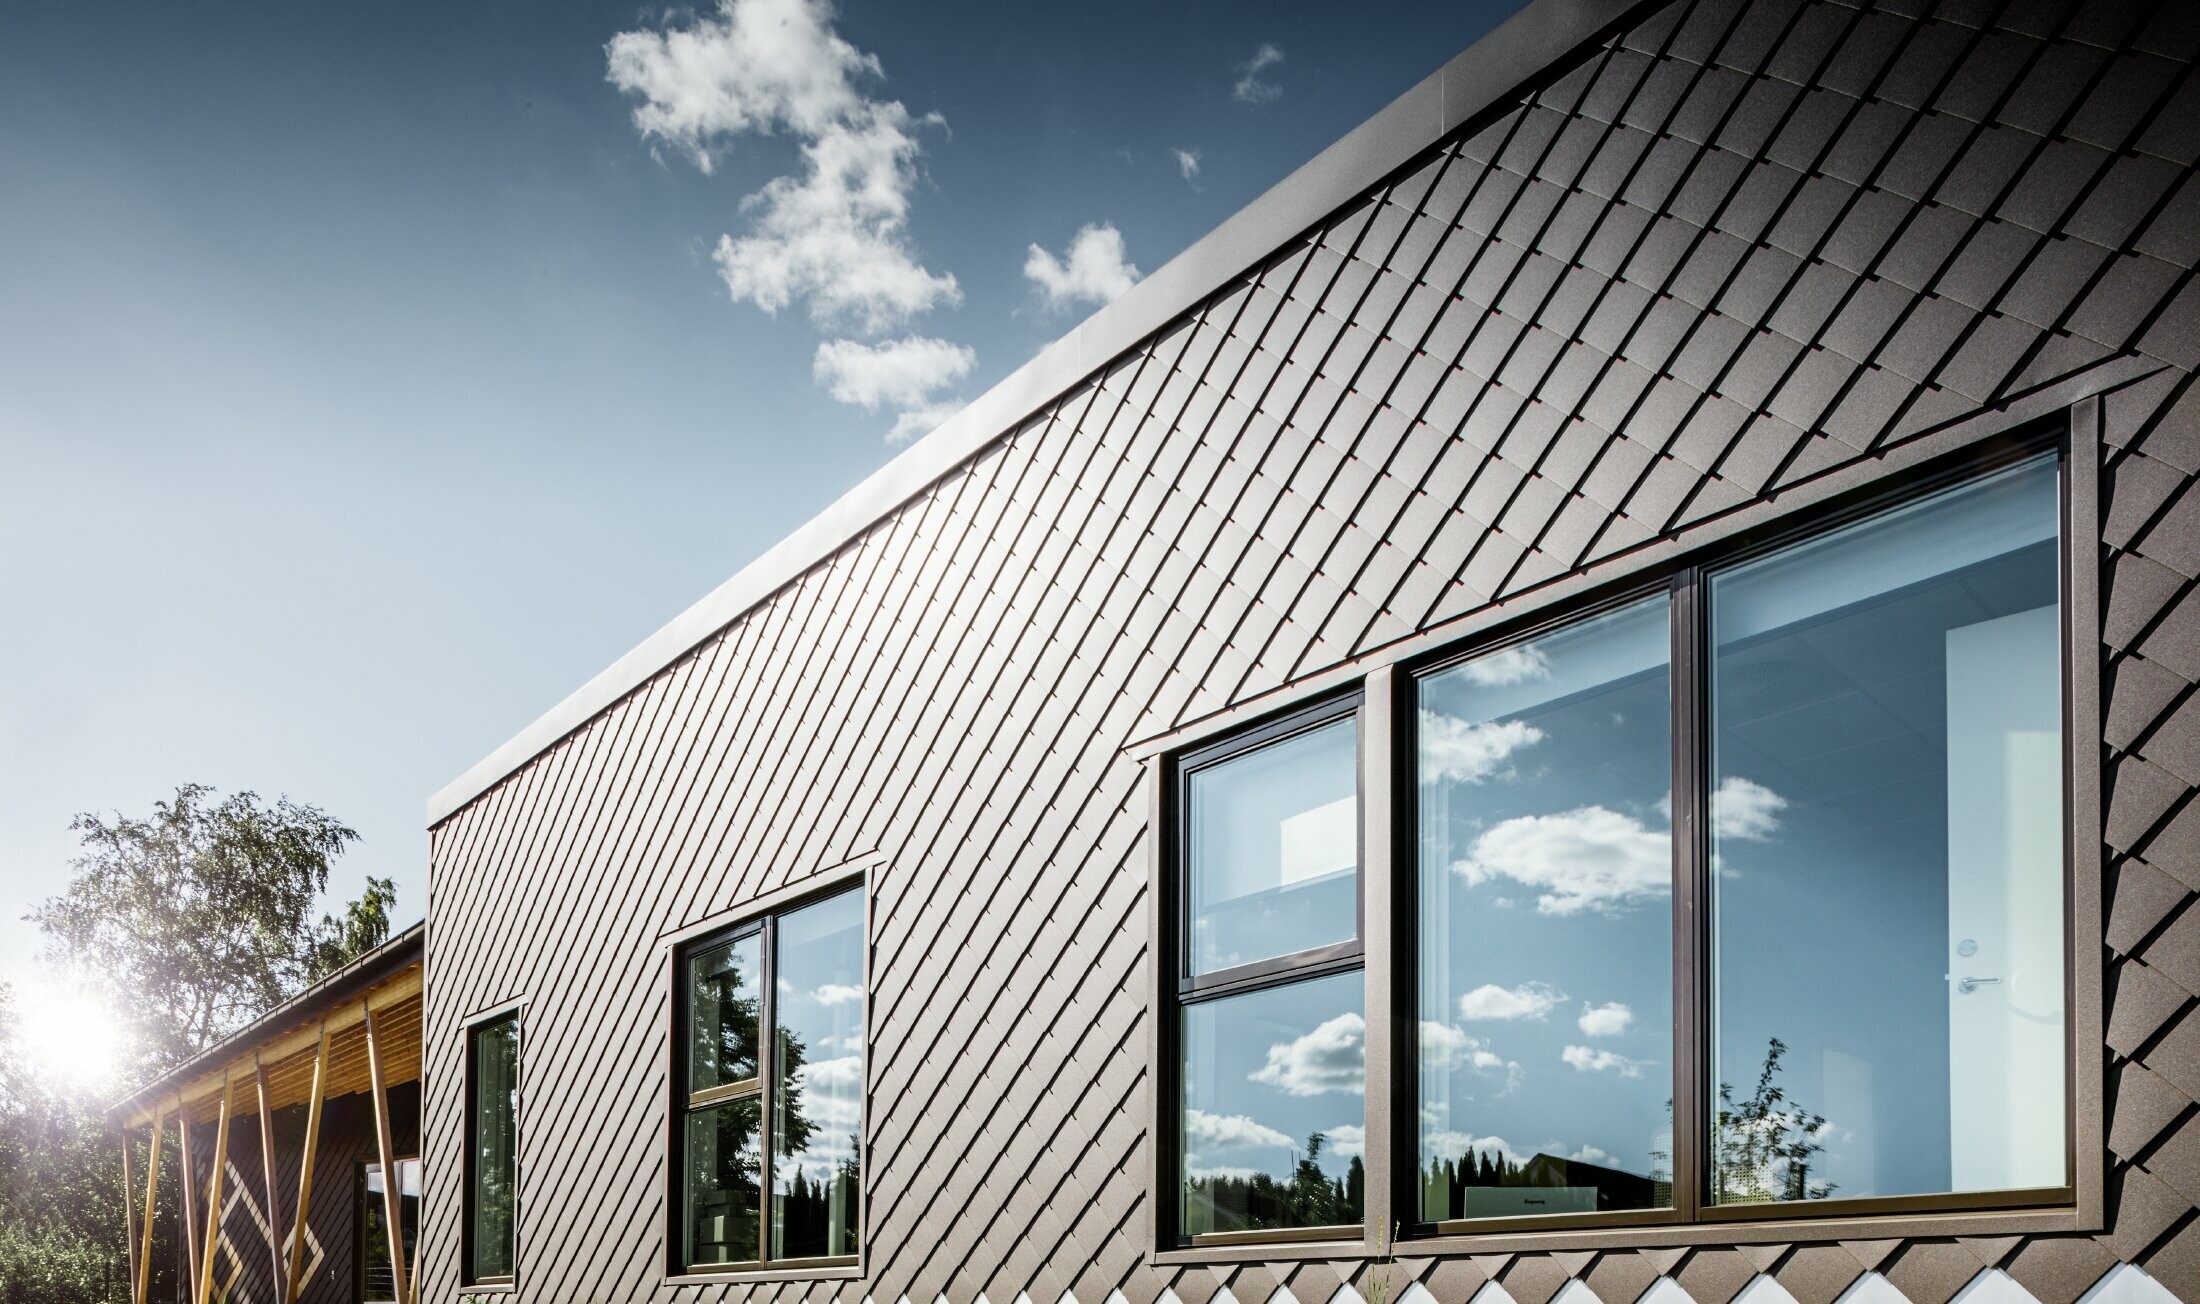 To zdjęcie przedszkola w Sztokholmie przedstawia nową elewację z dużymi powierzchniami okiennymi i dachem płaskim. Elewacja została obłożona rombem fasadowym 20 × 20 w kolorze brązowym.